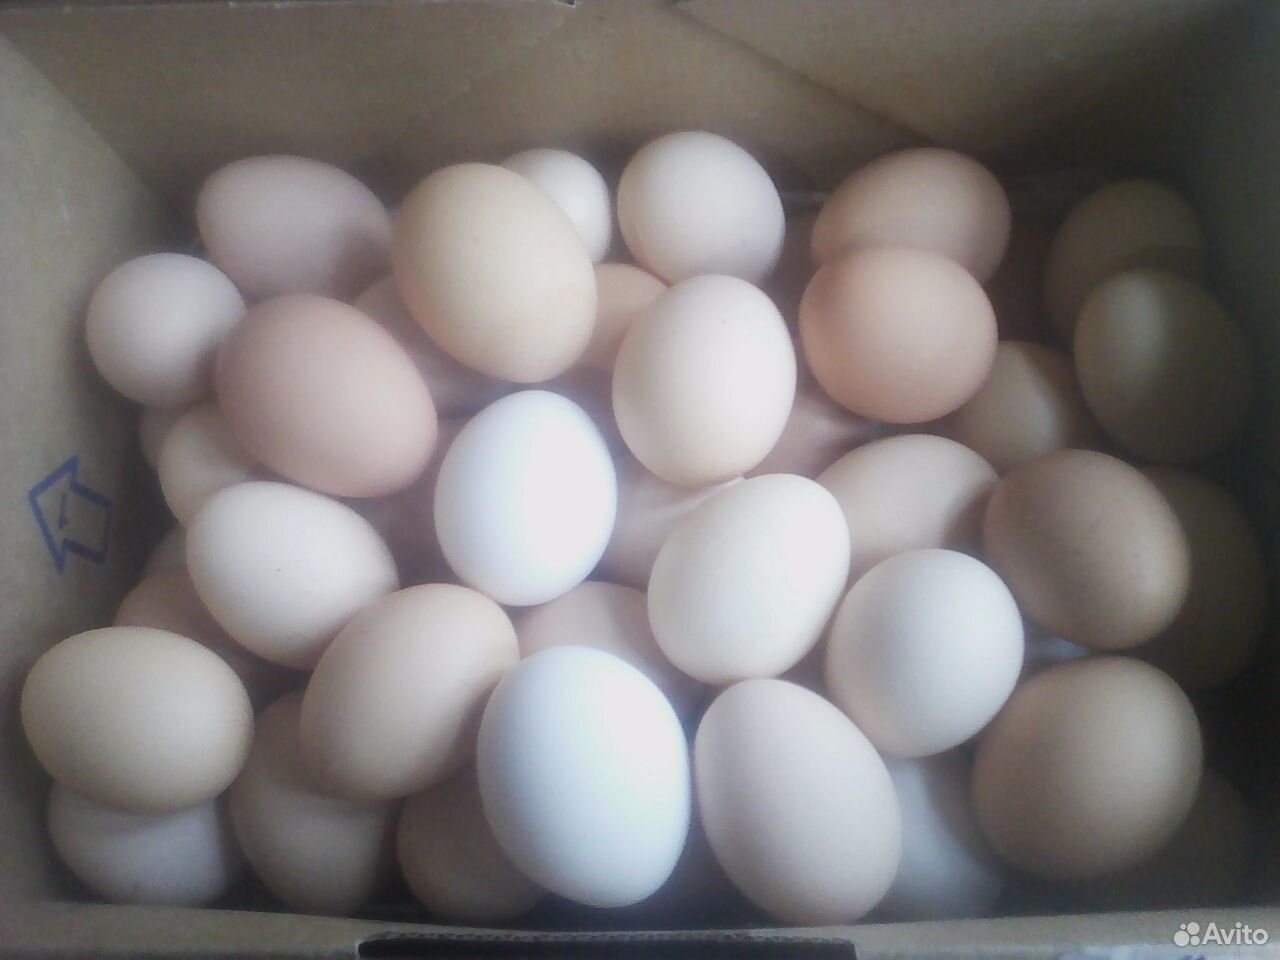 Купить инкубационное яйцо в волгограде. Инкубаторские яйца. Яйцо инкубационное купить в Орле и области на авито. Инкубационное яйцо купить в Нижегородской области на авито.